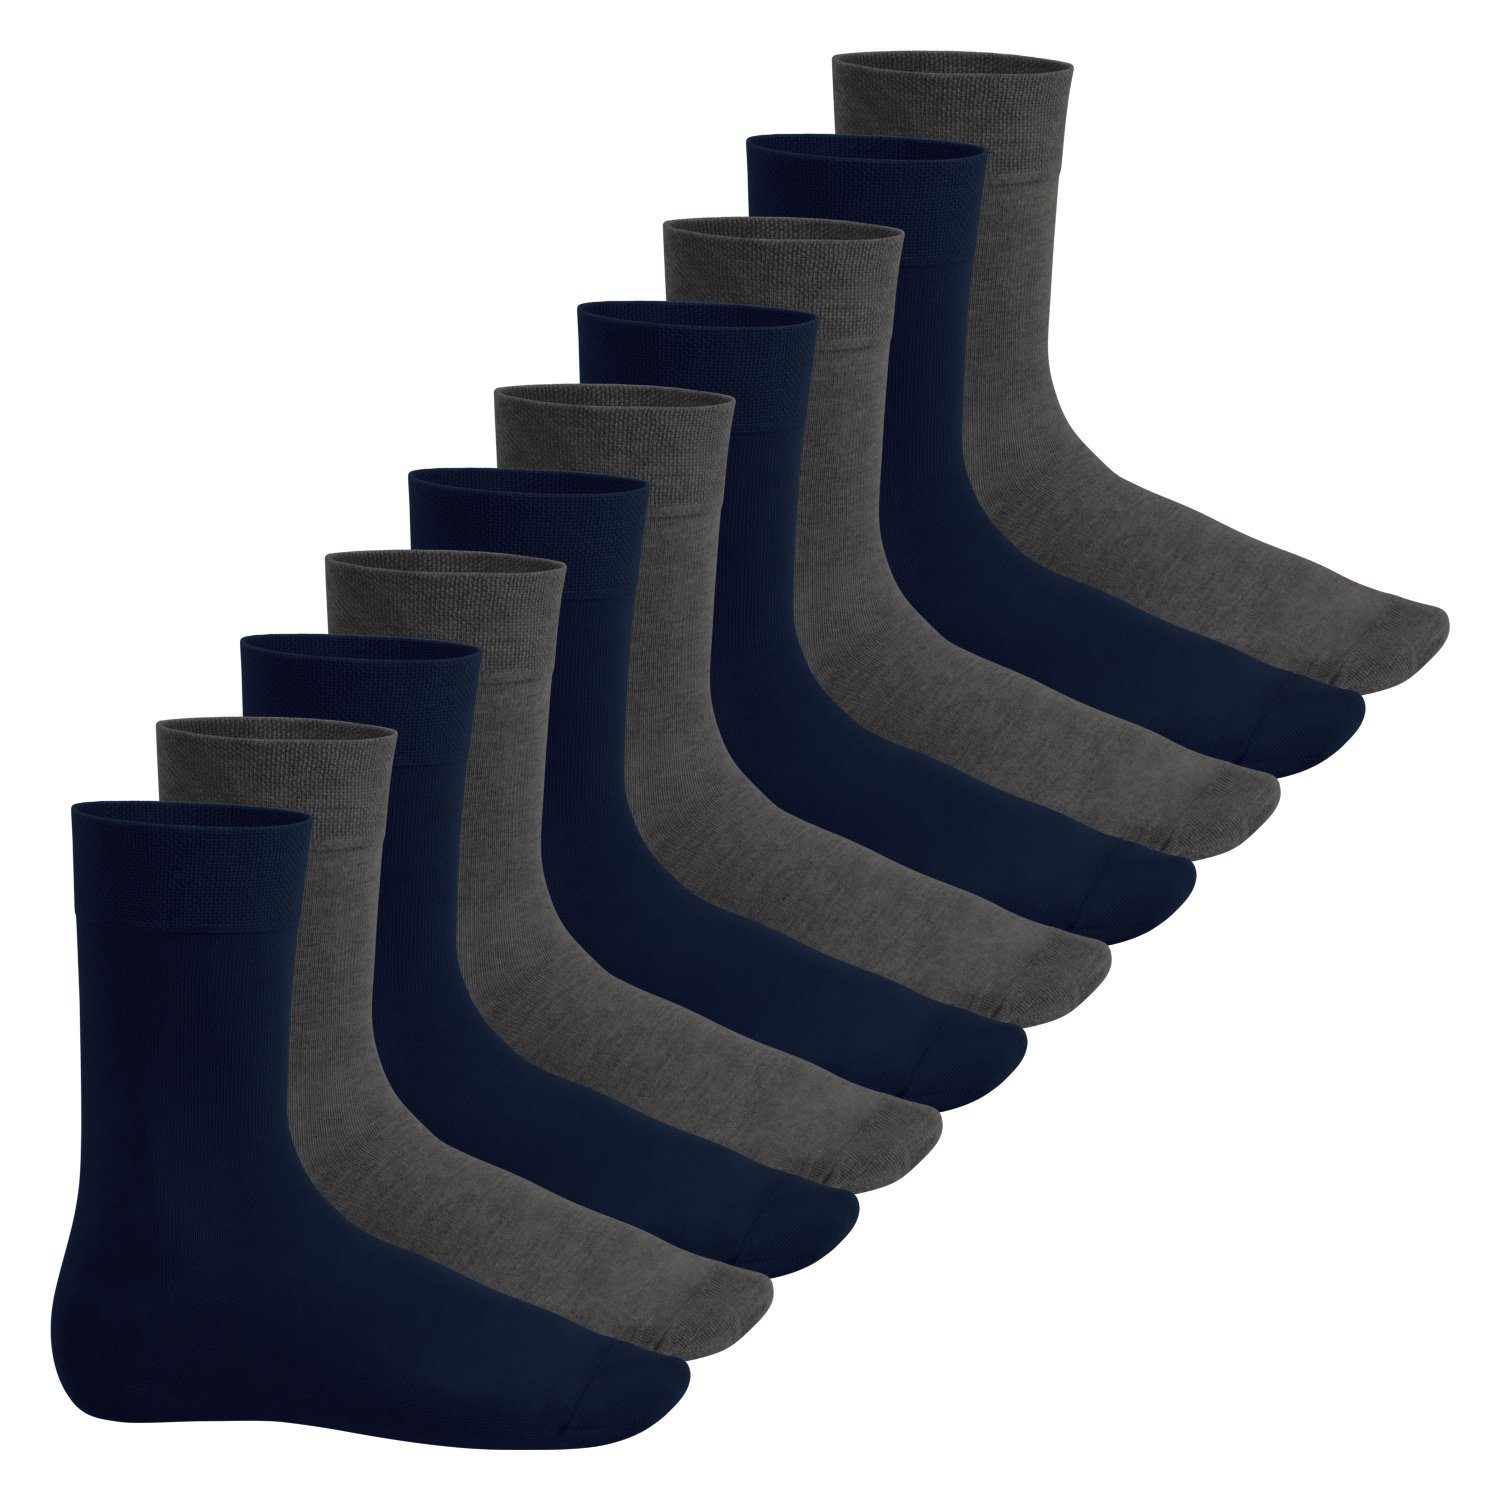 Footstar Basicsocken Everyday! Herren & Damen Socken (10 Paar) mit Baumwolle Marine-Anthra